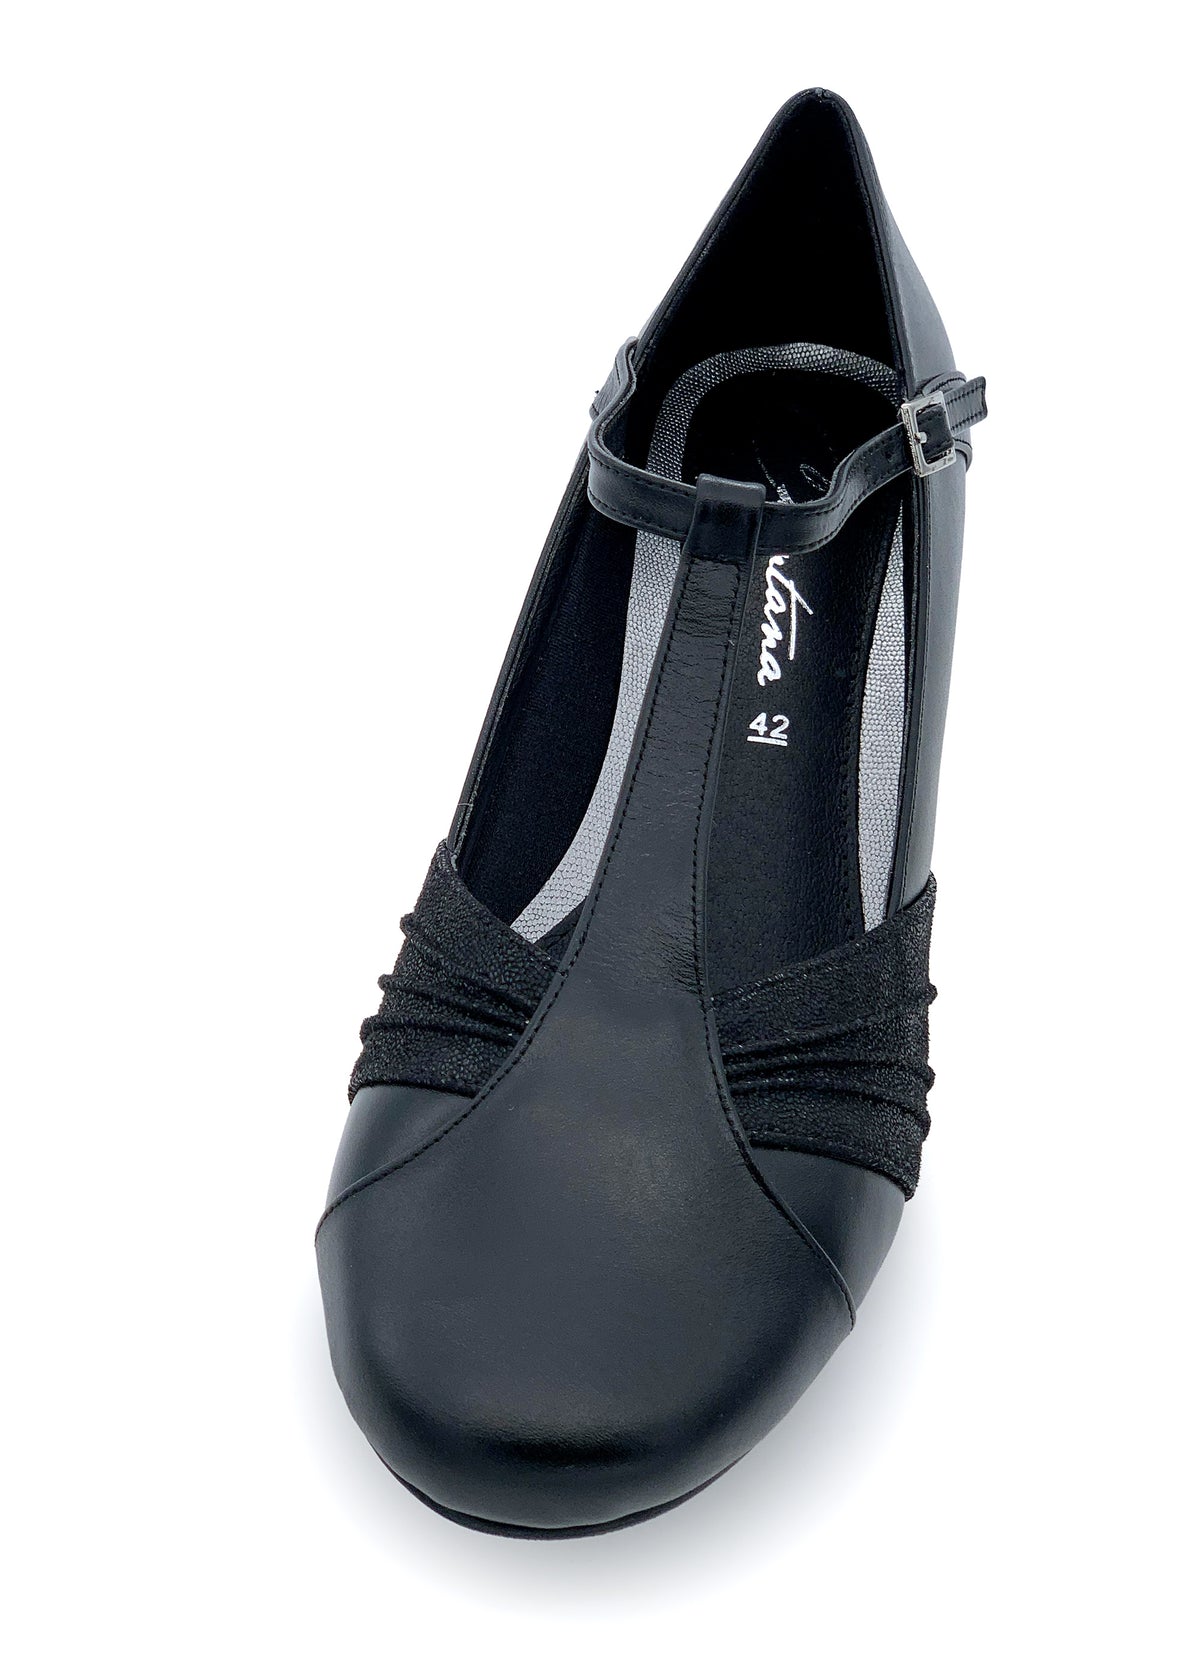 Låg öppen tå skor med ankelband - svarta